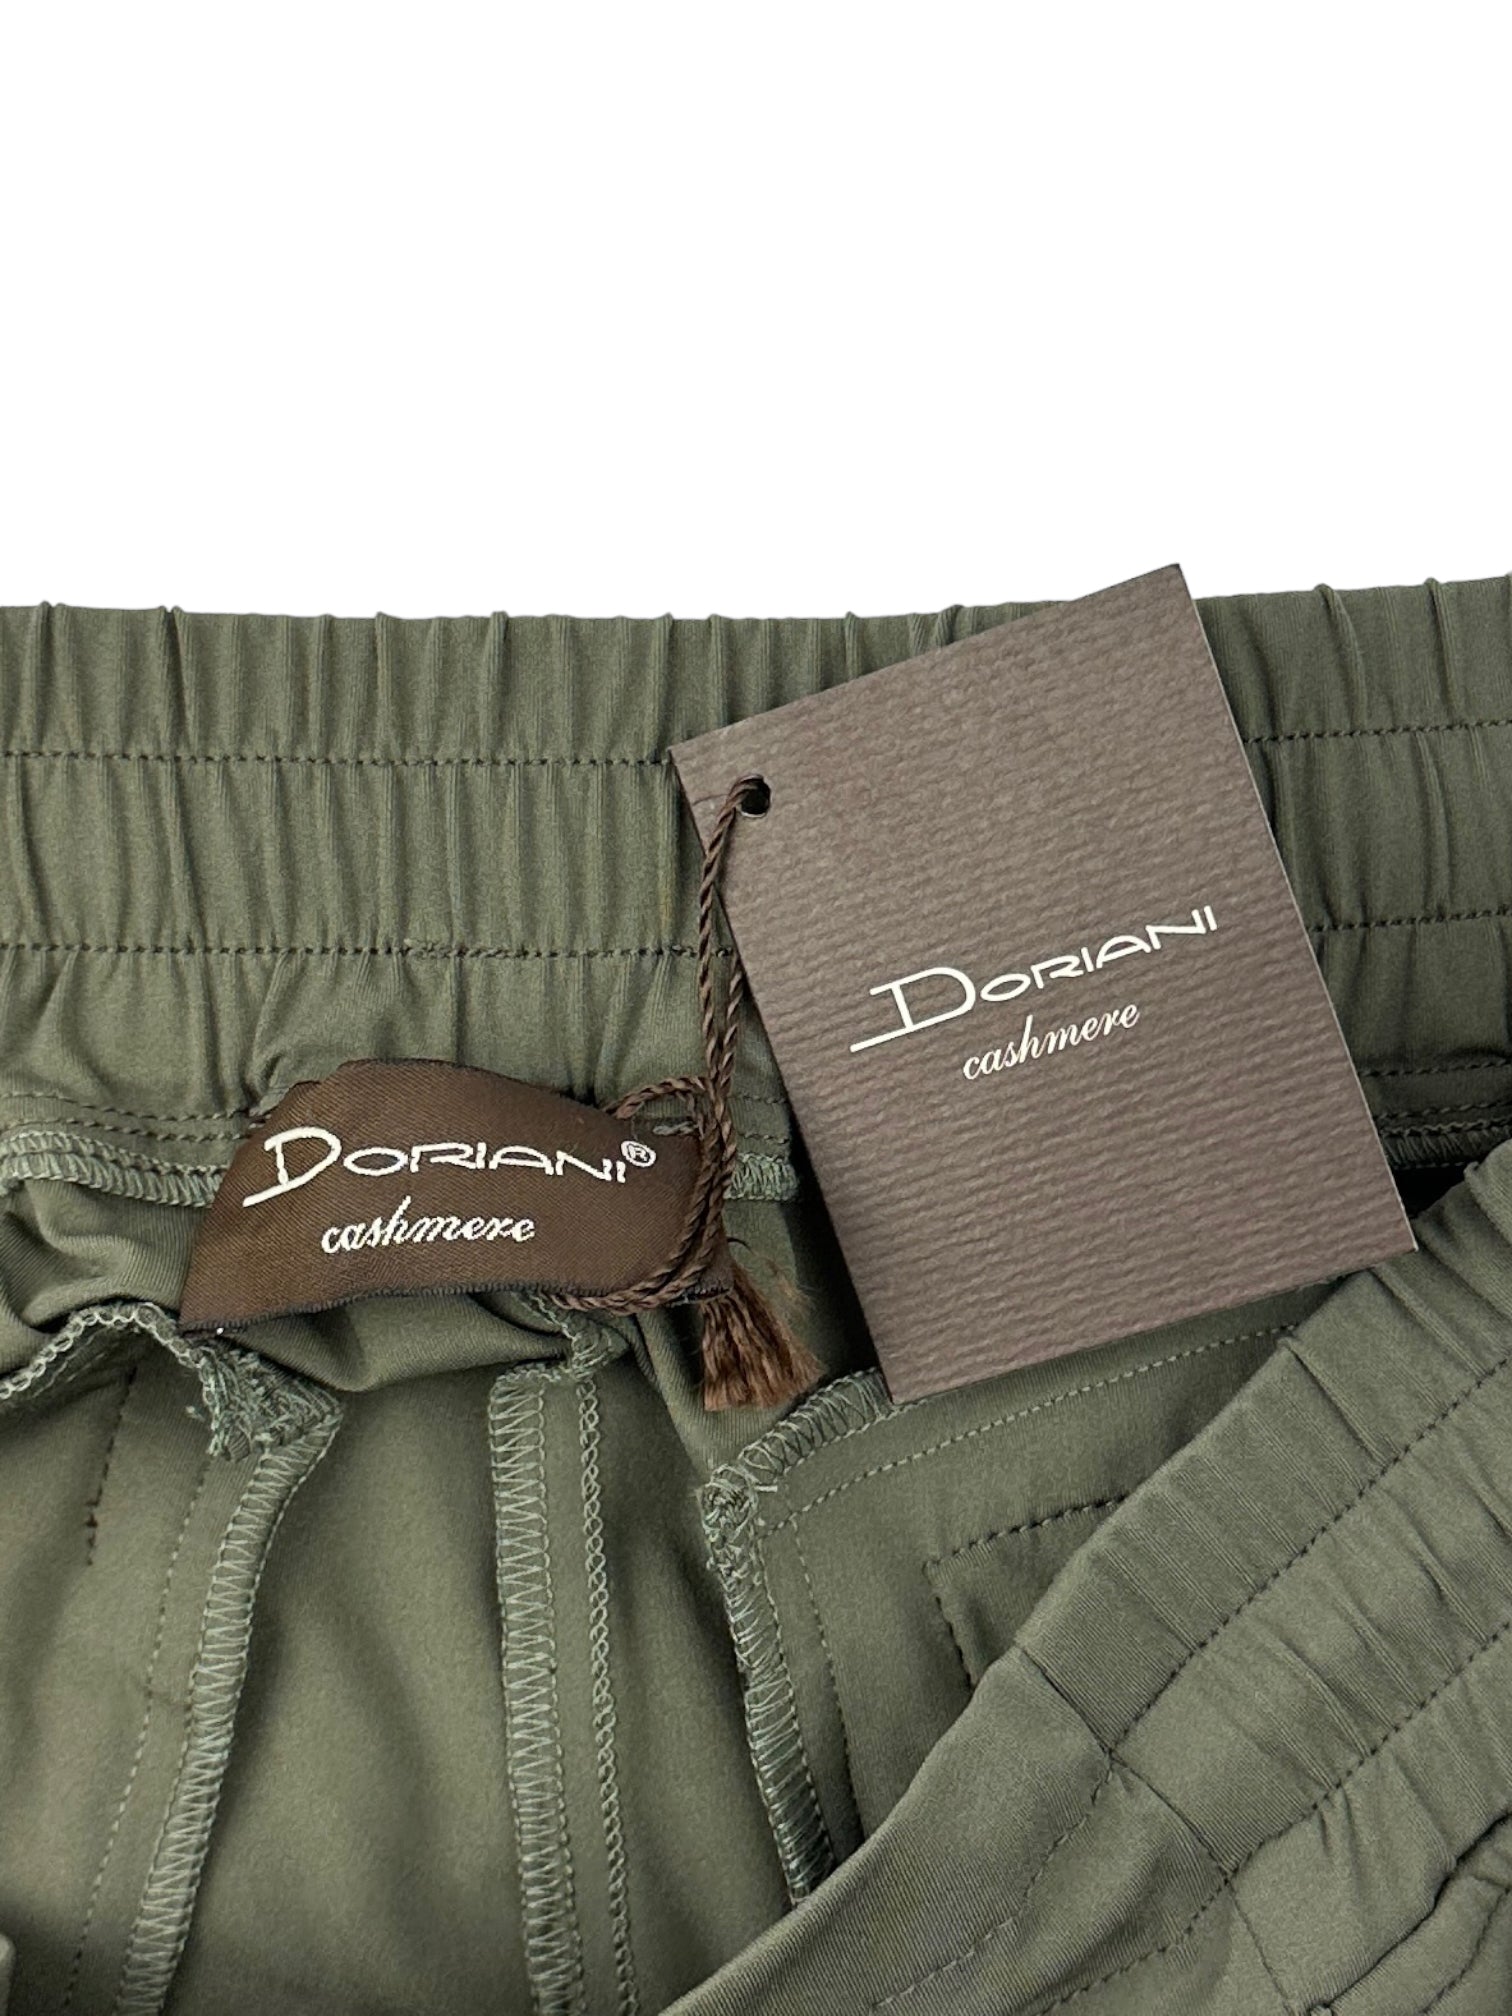 Doriani Cashmere Olive Green Stretch Trousers